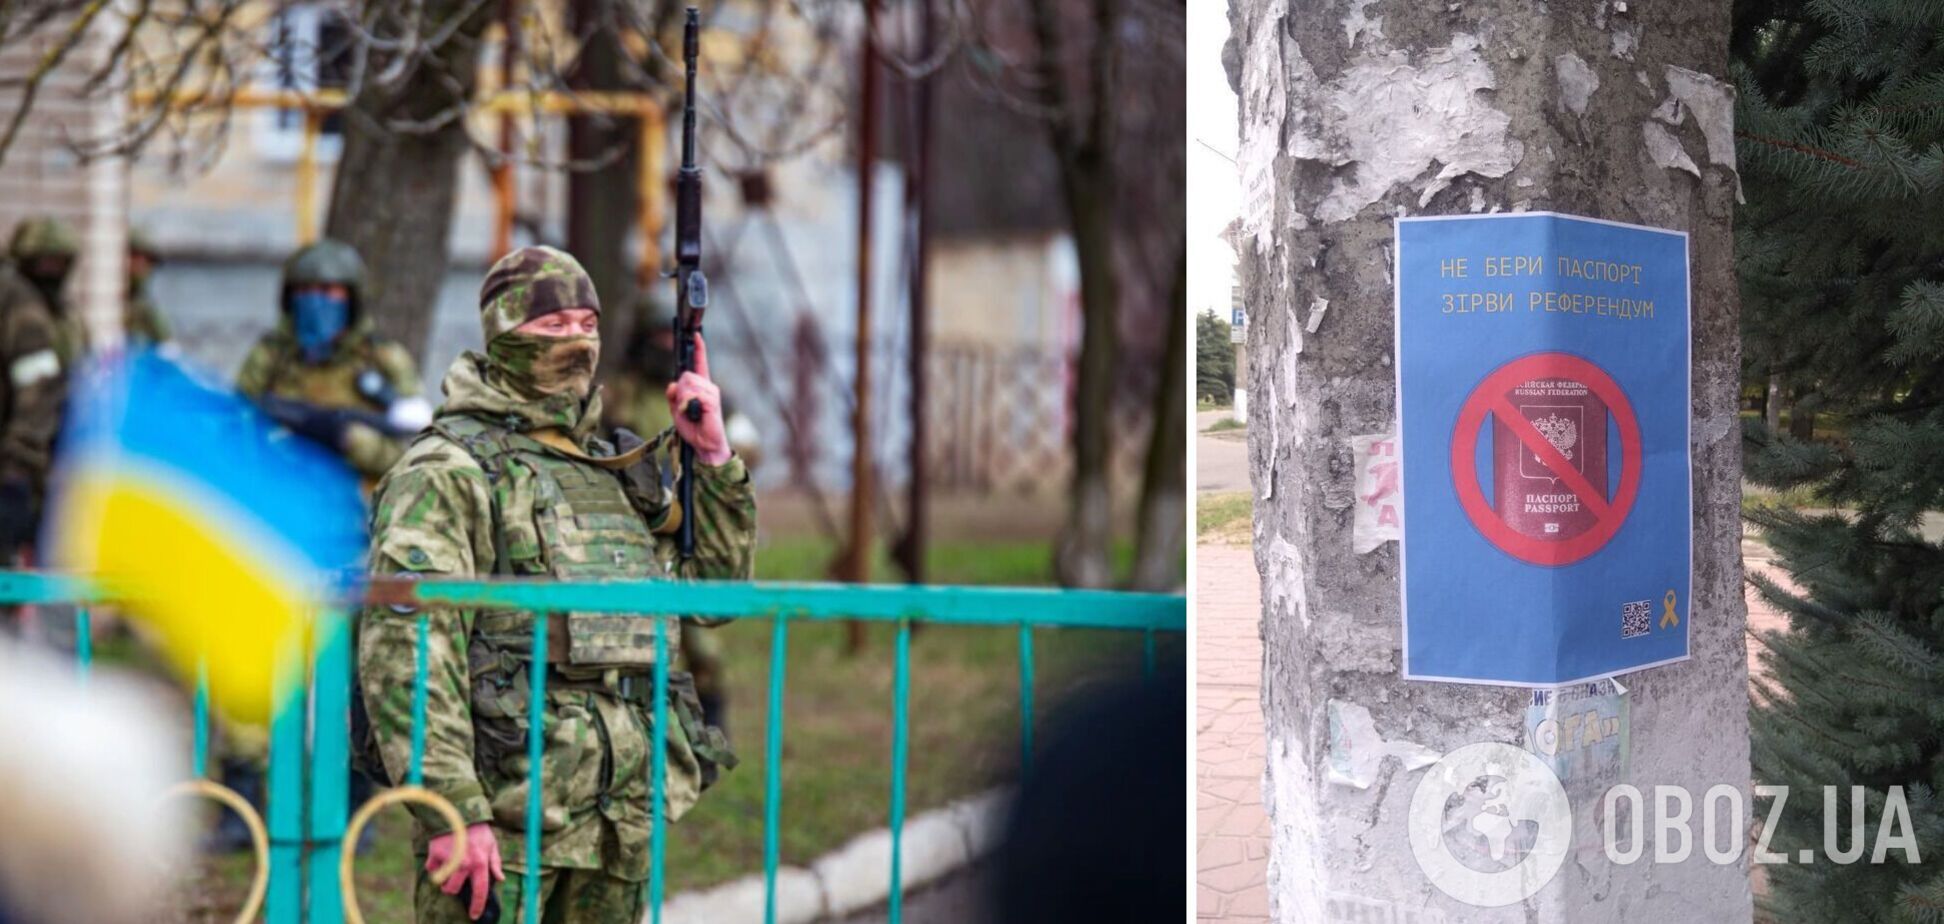 'ВСУ идут': партизаны напомнили оккупантам, что Херсон – это Украина, и обратились к населению. Фото